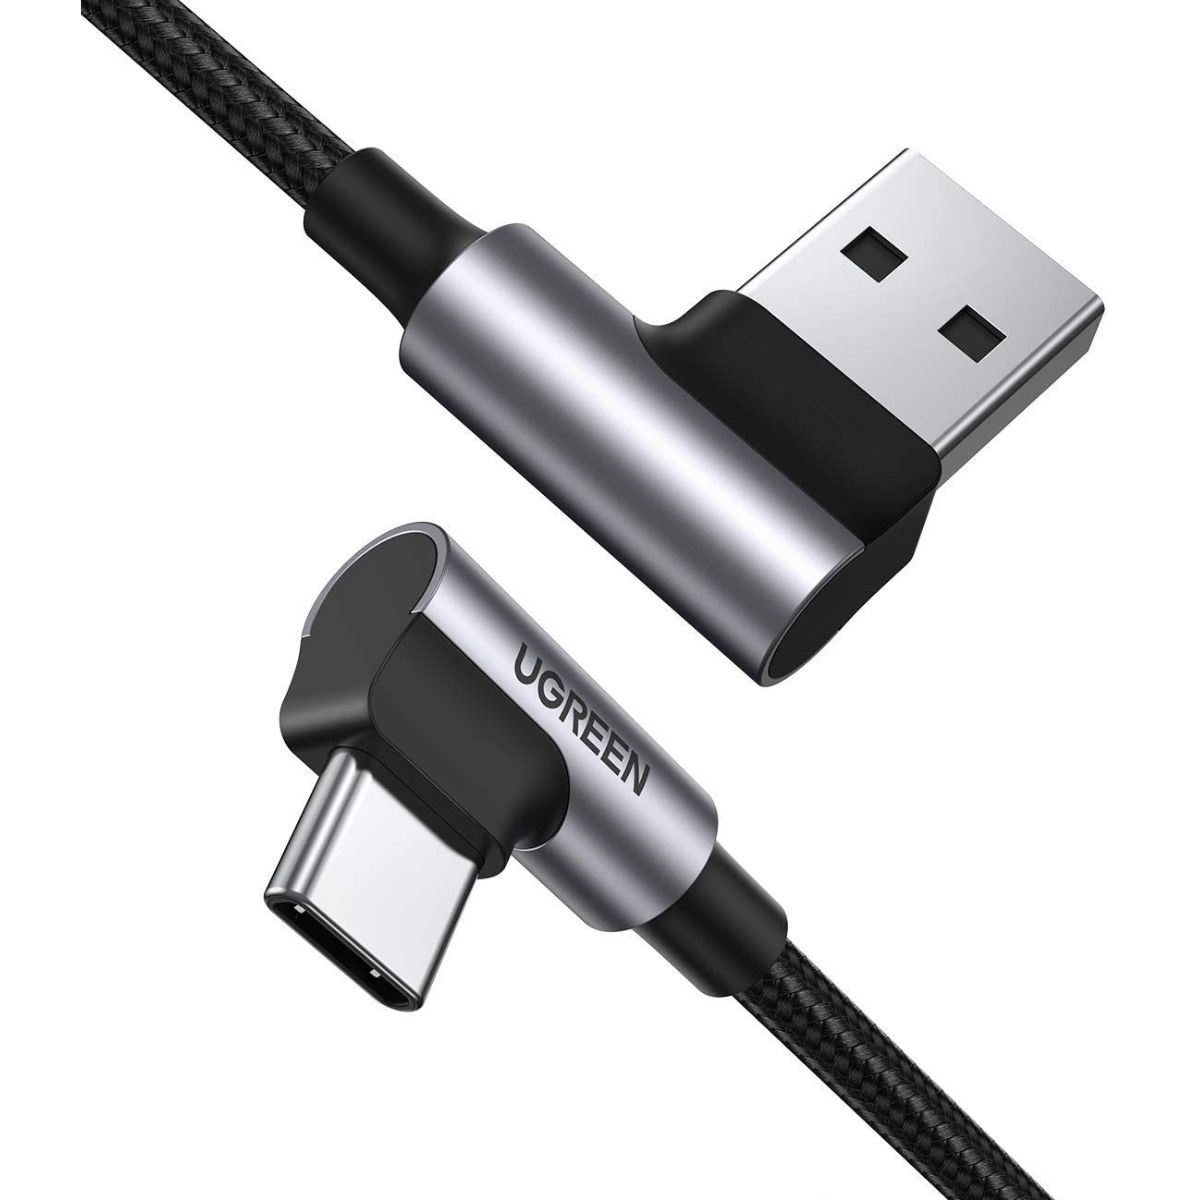 Cáp sạc nhanh USB 2.0 sang USB type C Ugreen 20855 US176 chiều dài 50cm, màu đen, vỏ nhôm mạ niken